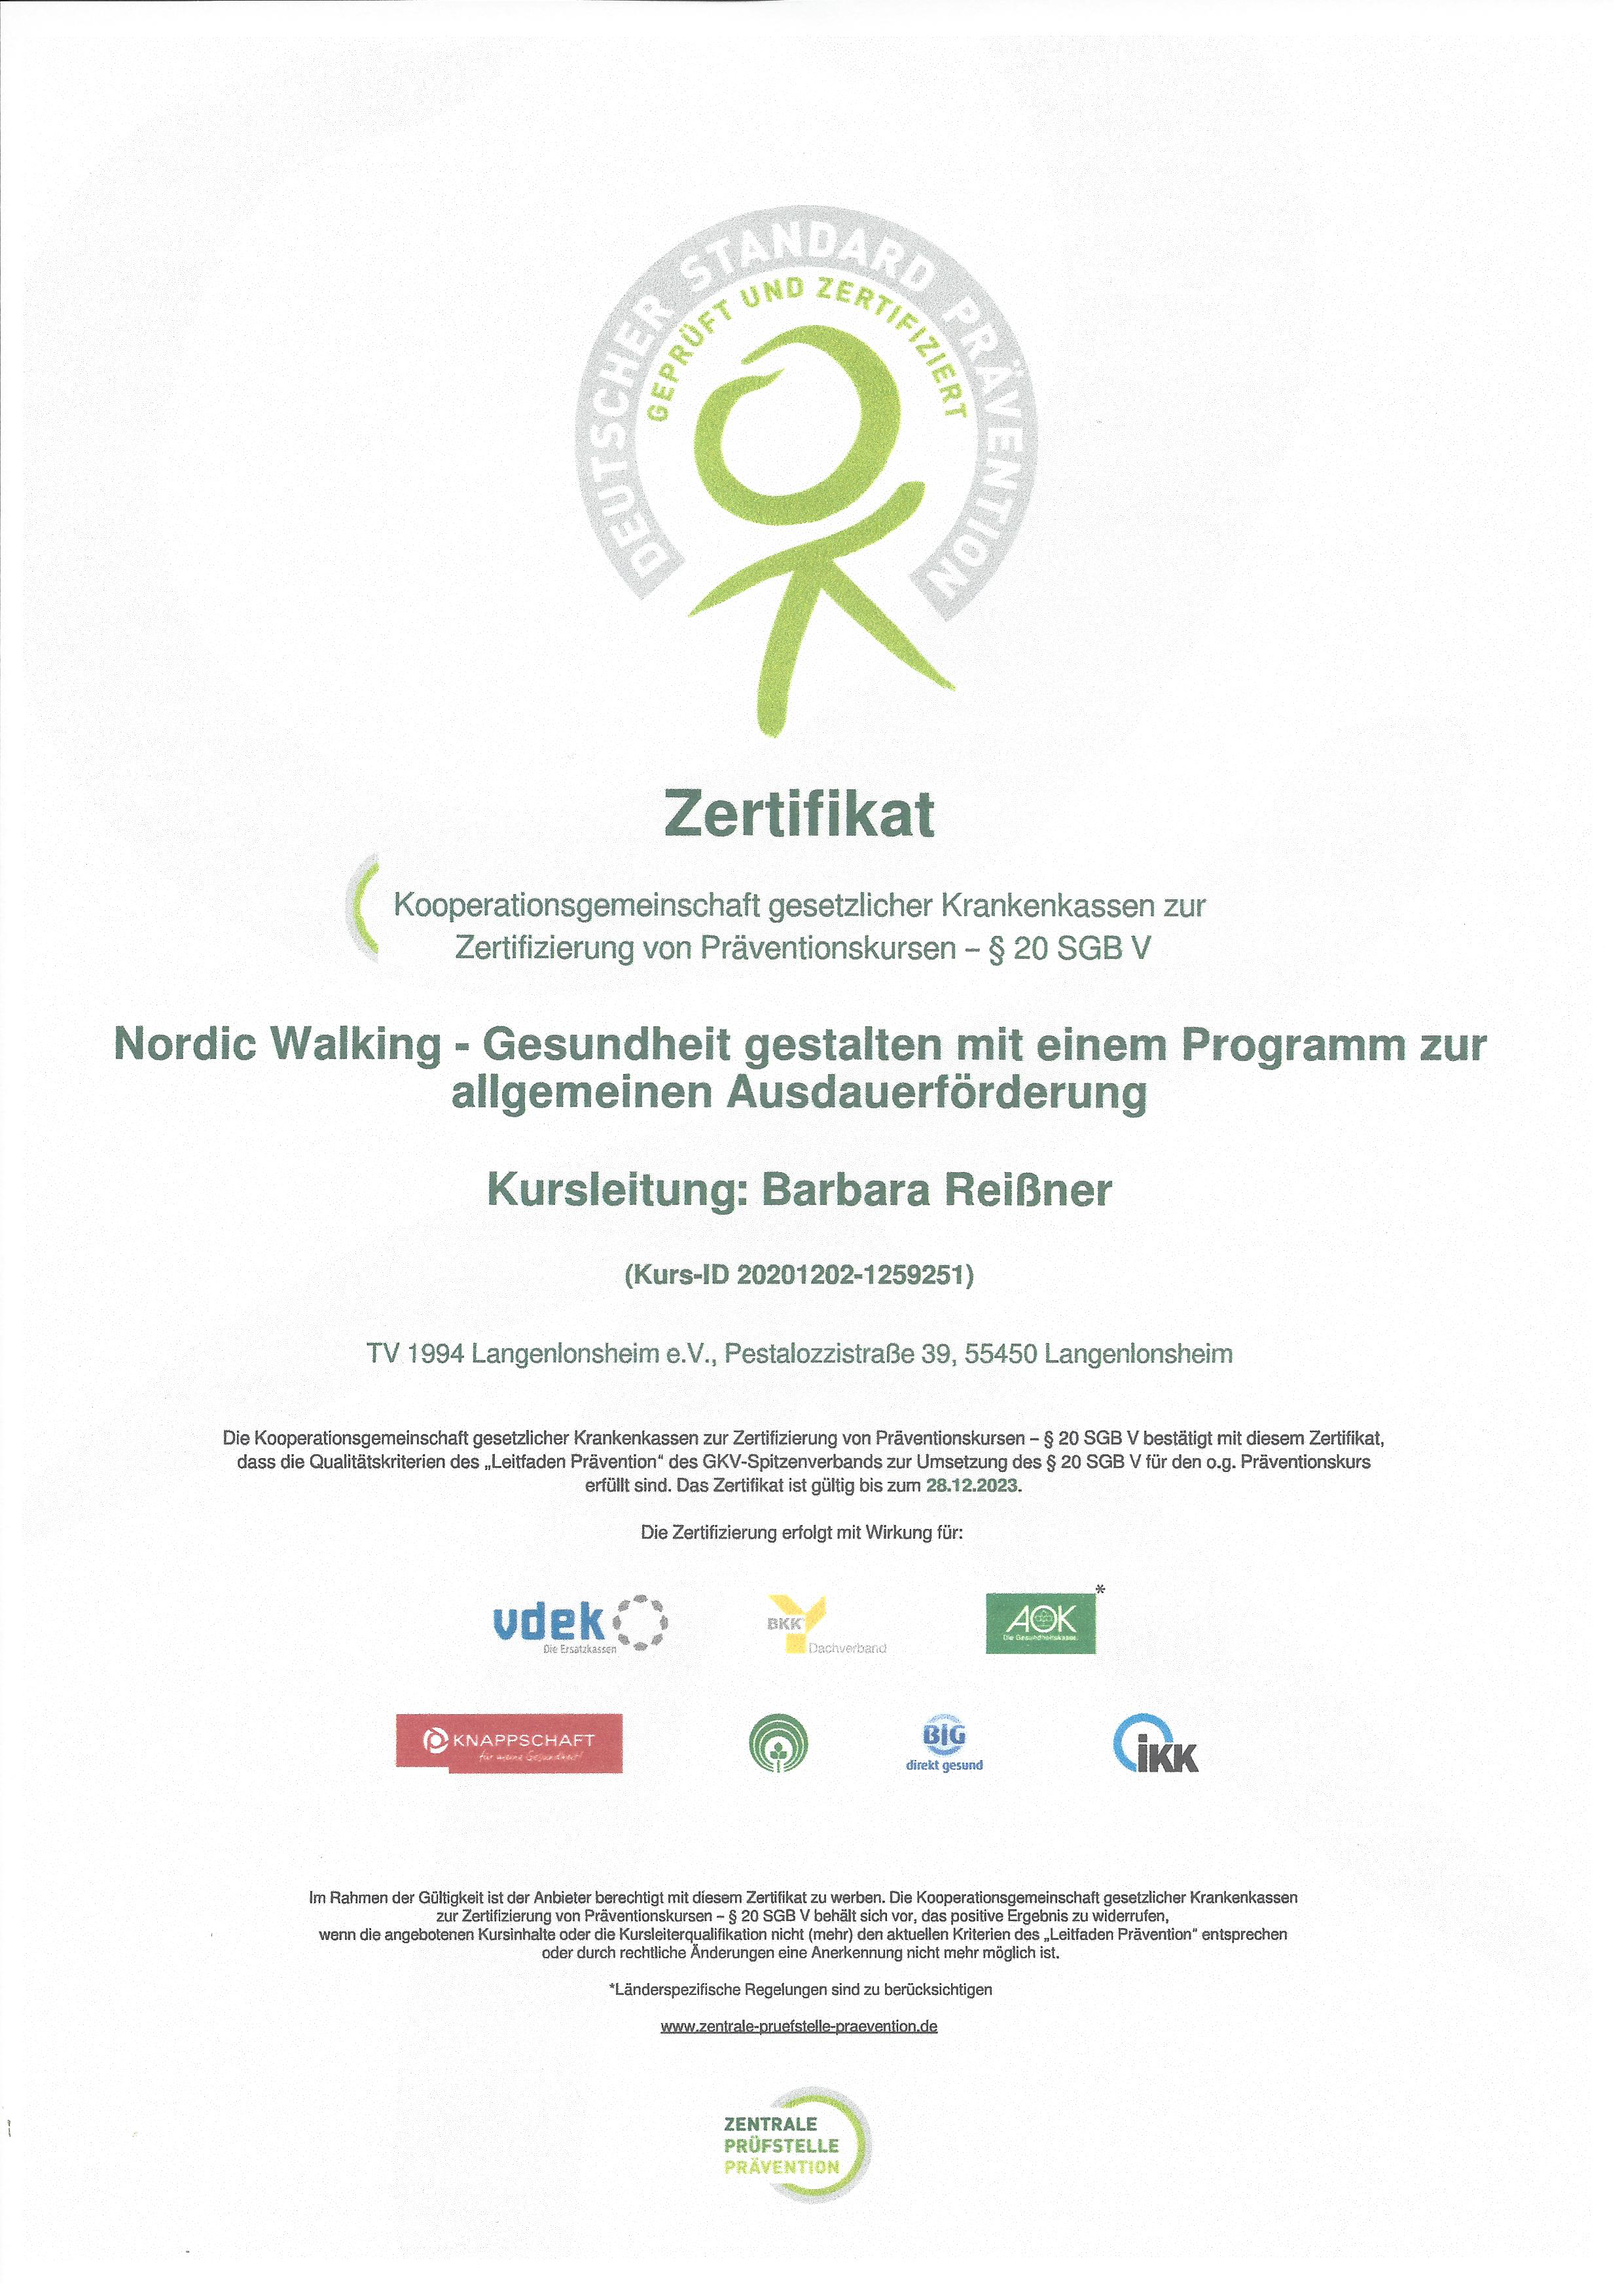 Zertitifkat Nordic Walking Trainer Reißner